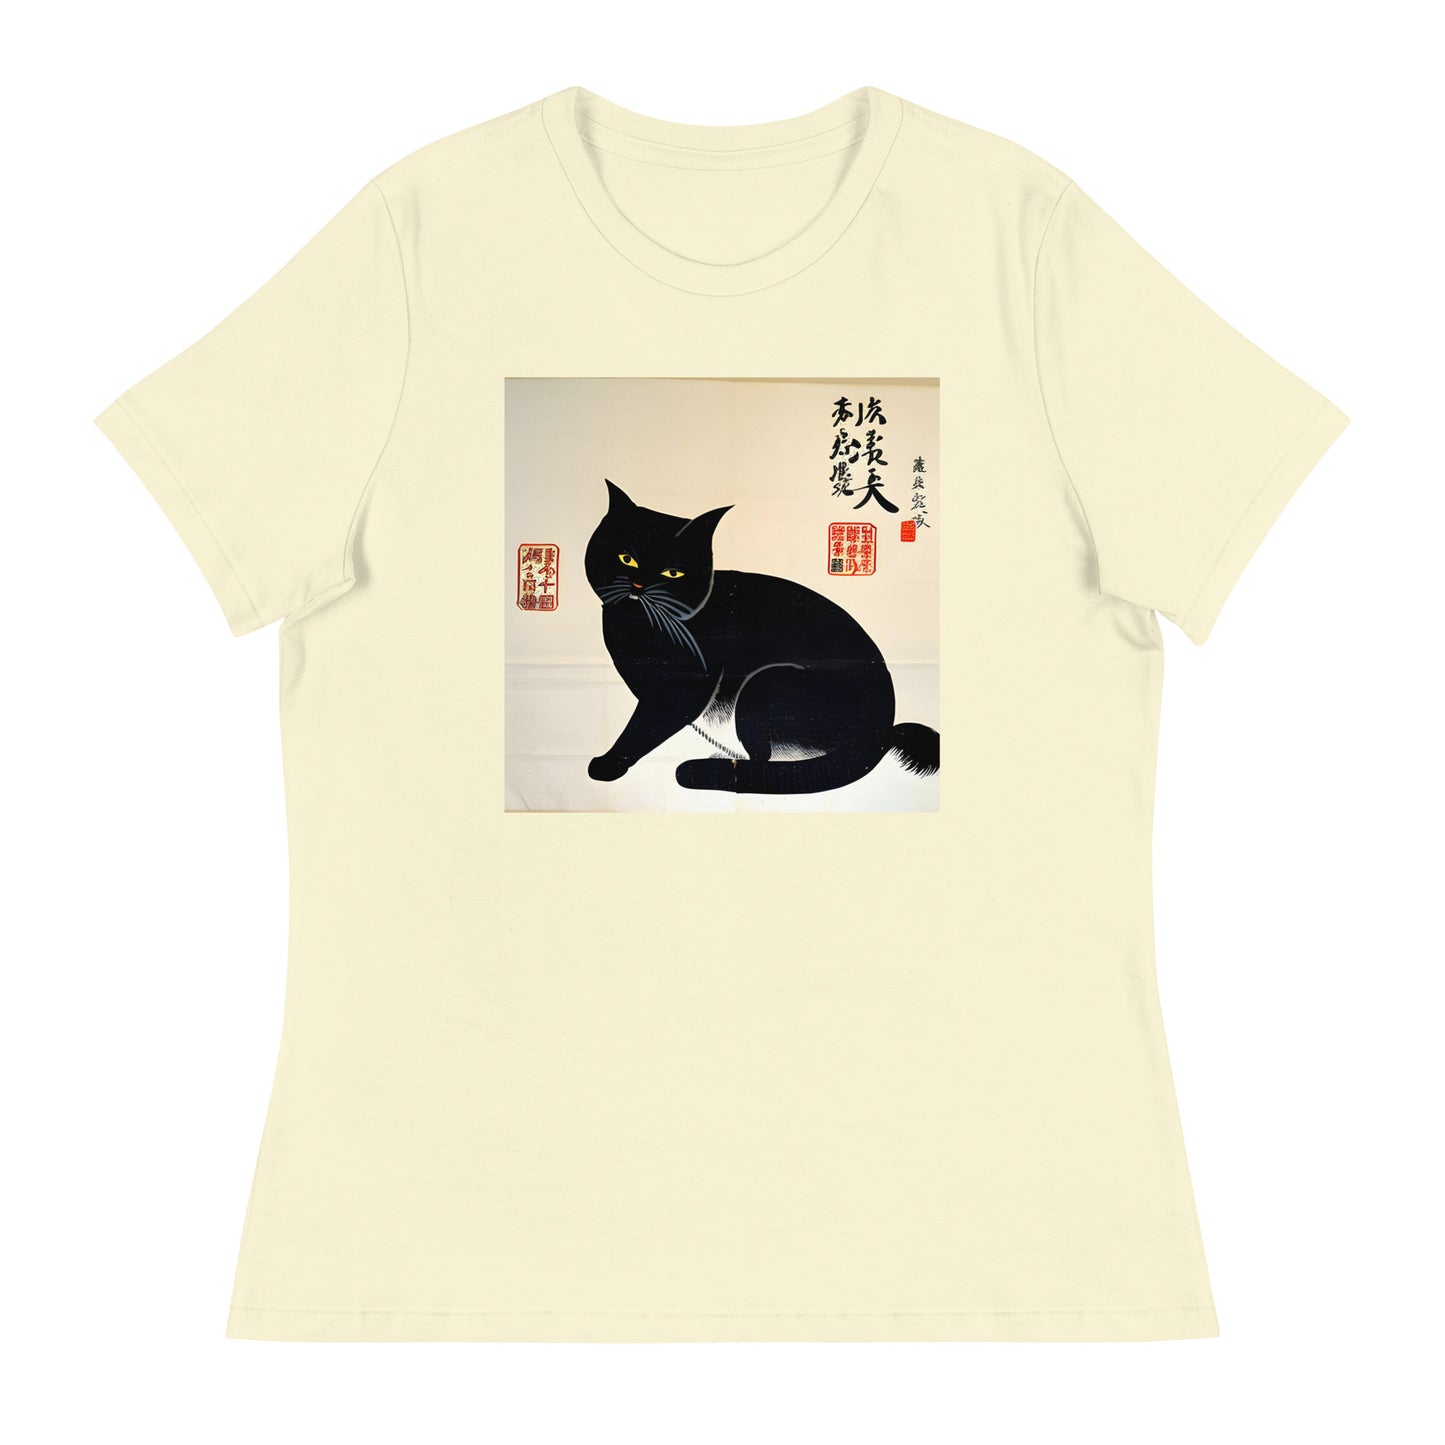 Meowsome Women's T-Shirt - 018